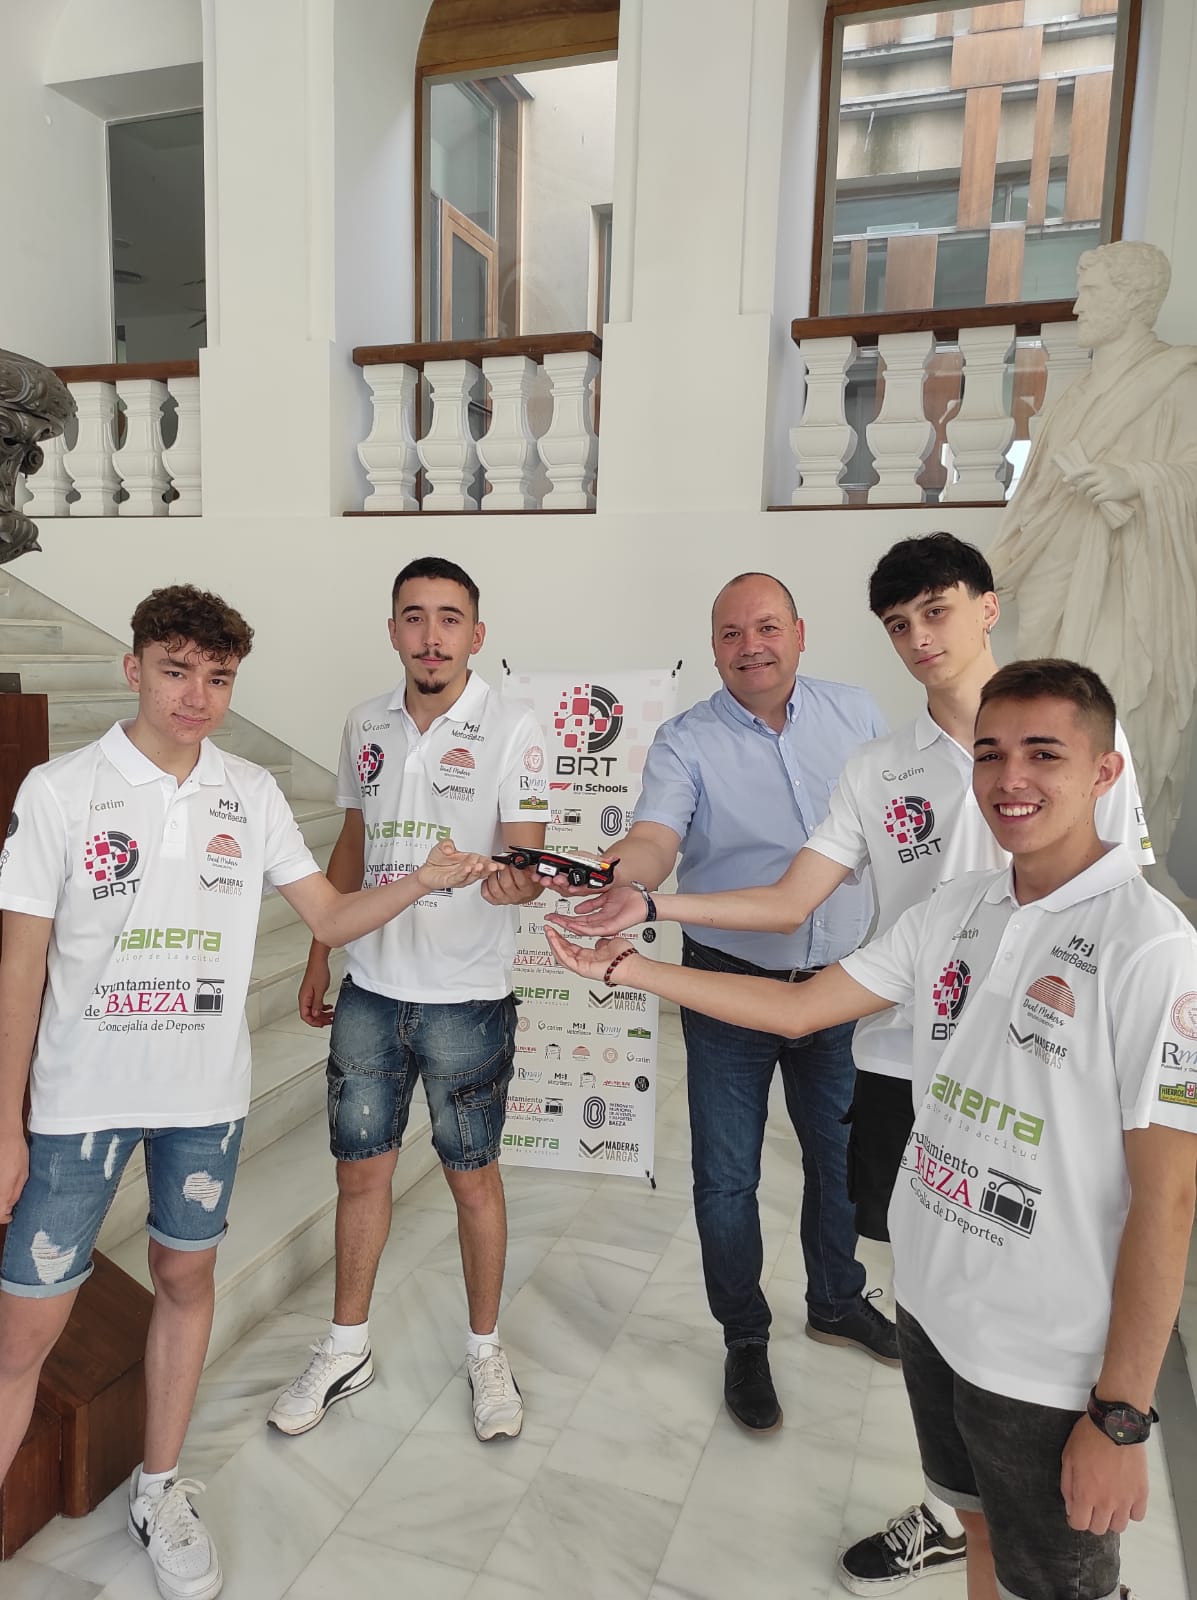 El Biatia Racing Team único equipo español en la “F1 In Schools Global” que se celebrara en Reino unido del 10 al 14 julio